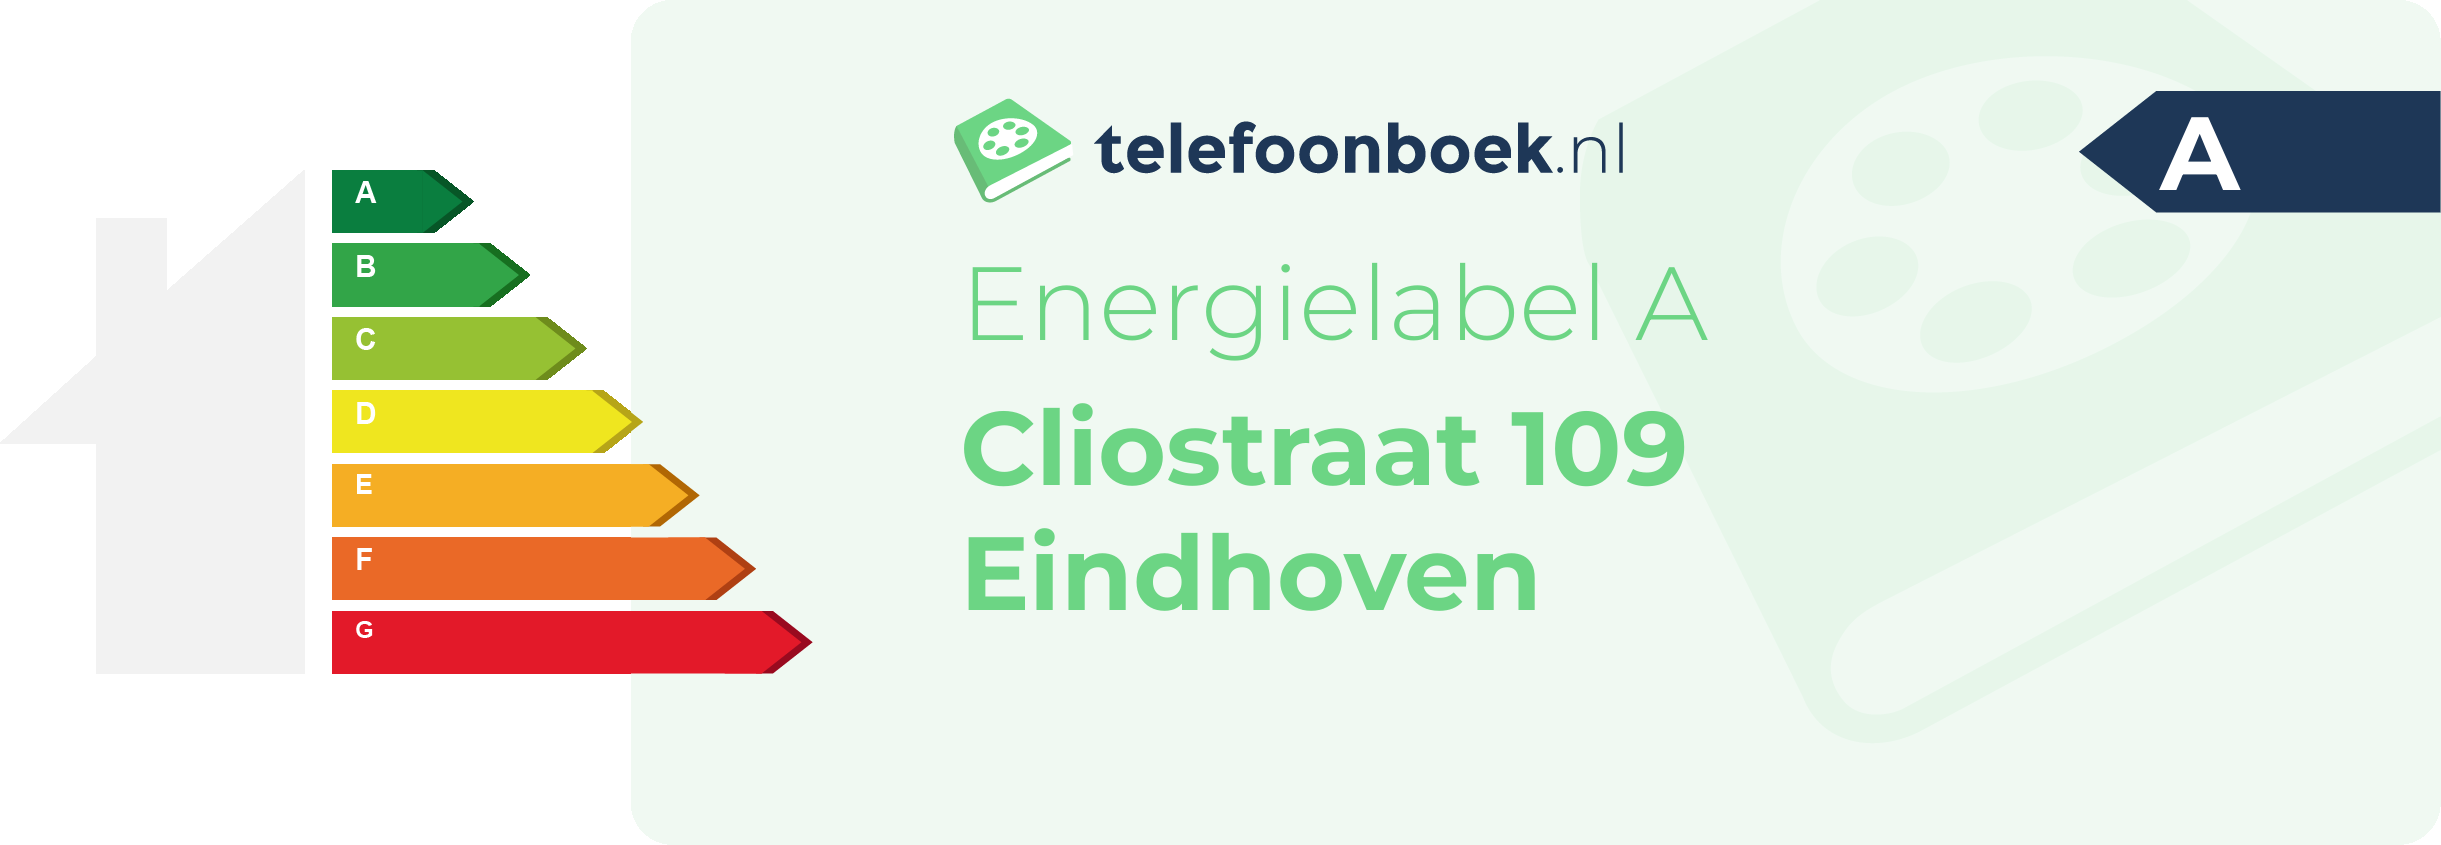 Energielabel Cliostraat 109 Eindhoven